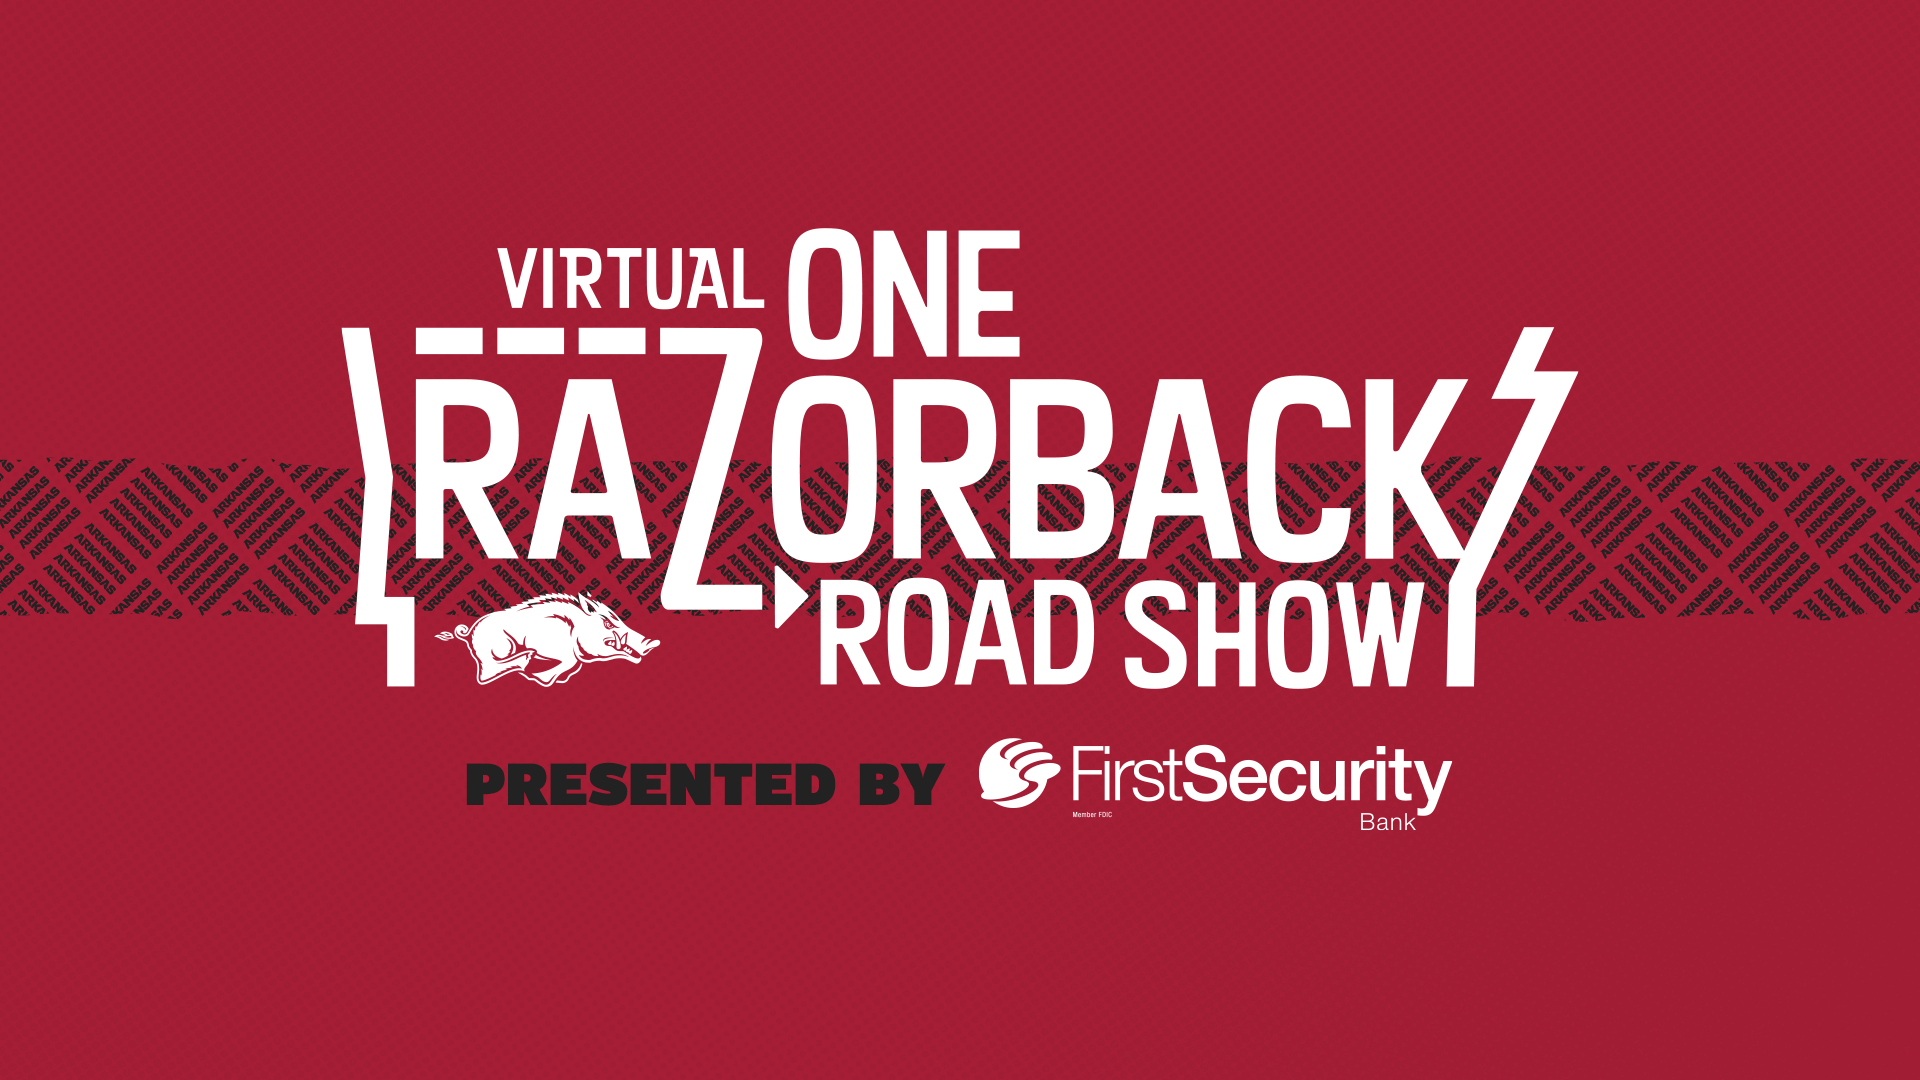 ONE Razorback Virtual Roadshows Arkansas Razorbacks